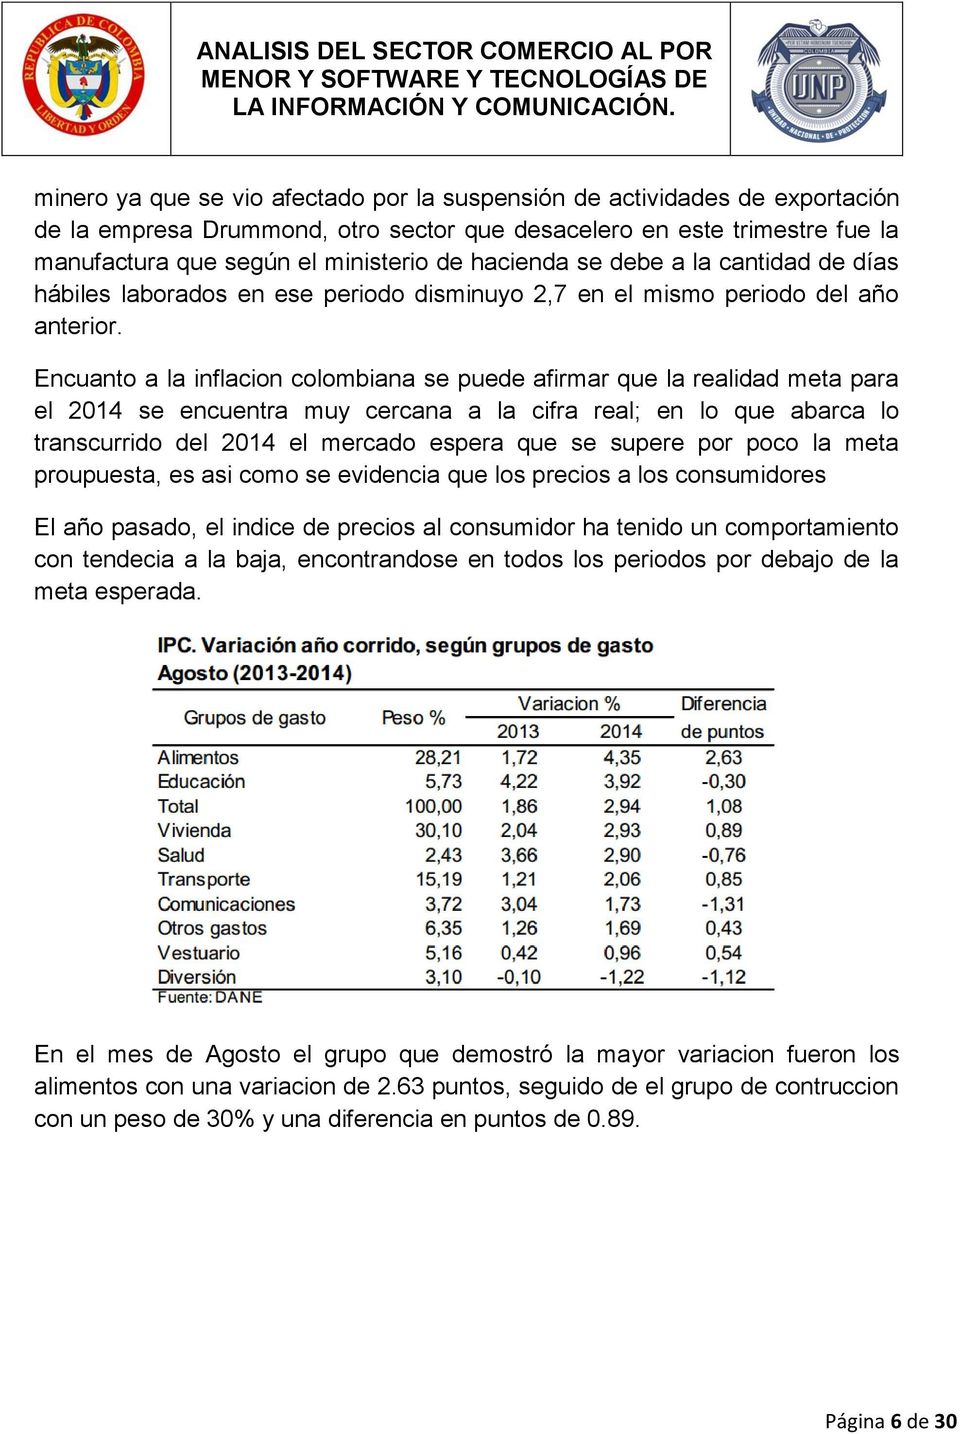 Encuanto a la inflacion colombiana se puede afirmar que la realidad meta para el 2014 se encuentra muy cercana a la cifra real; en lo que abarca lo transcurrido del 2014 el mercado espera que se